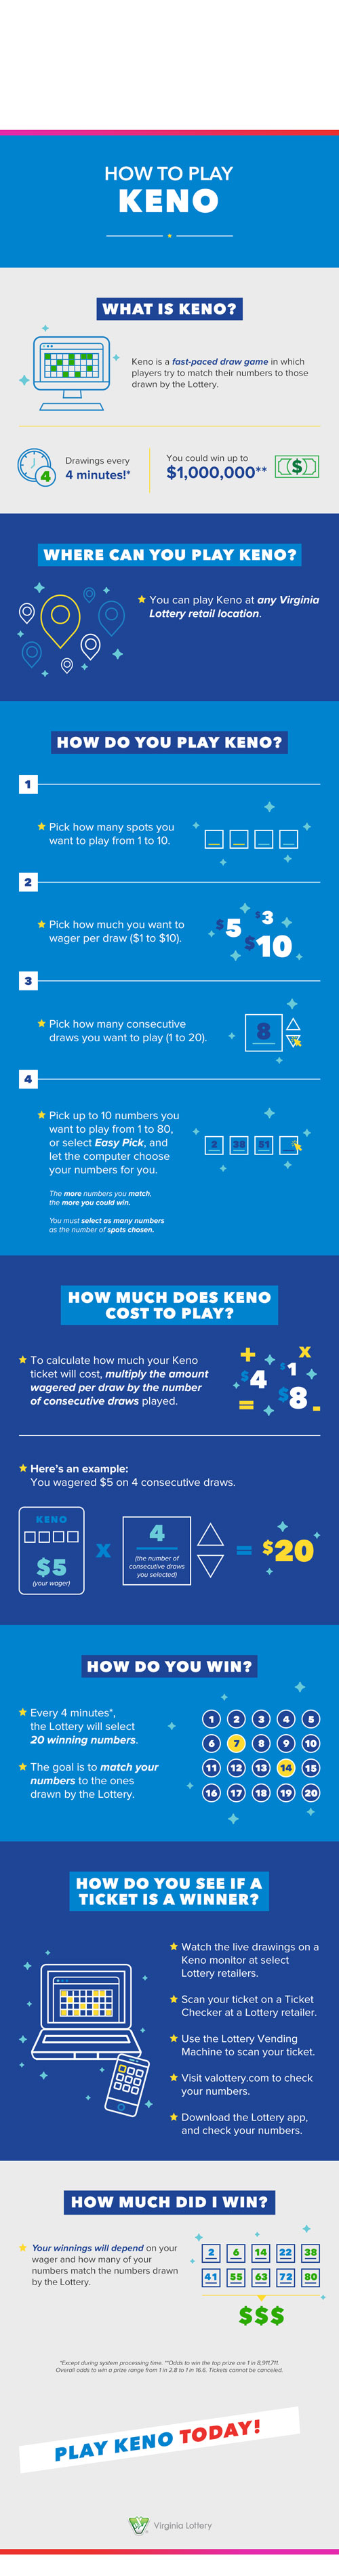 keno infographic